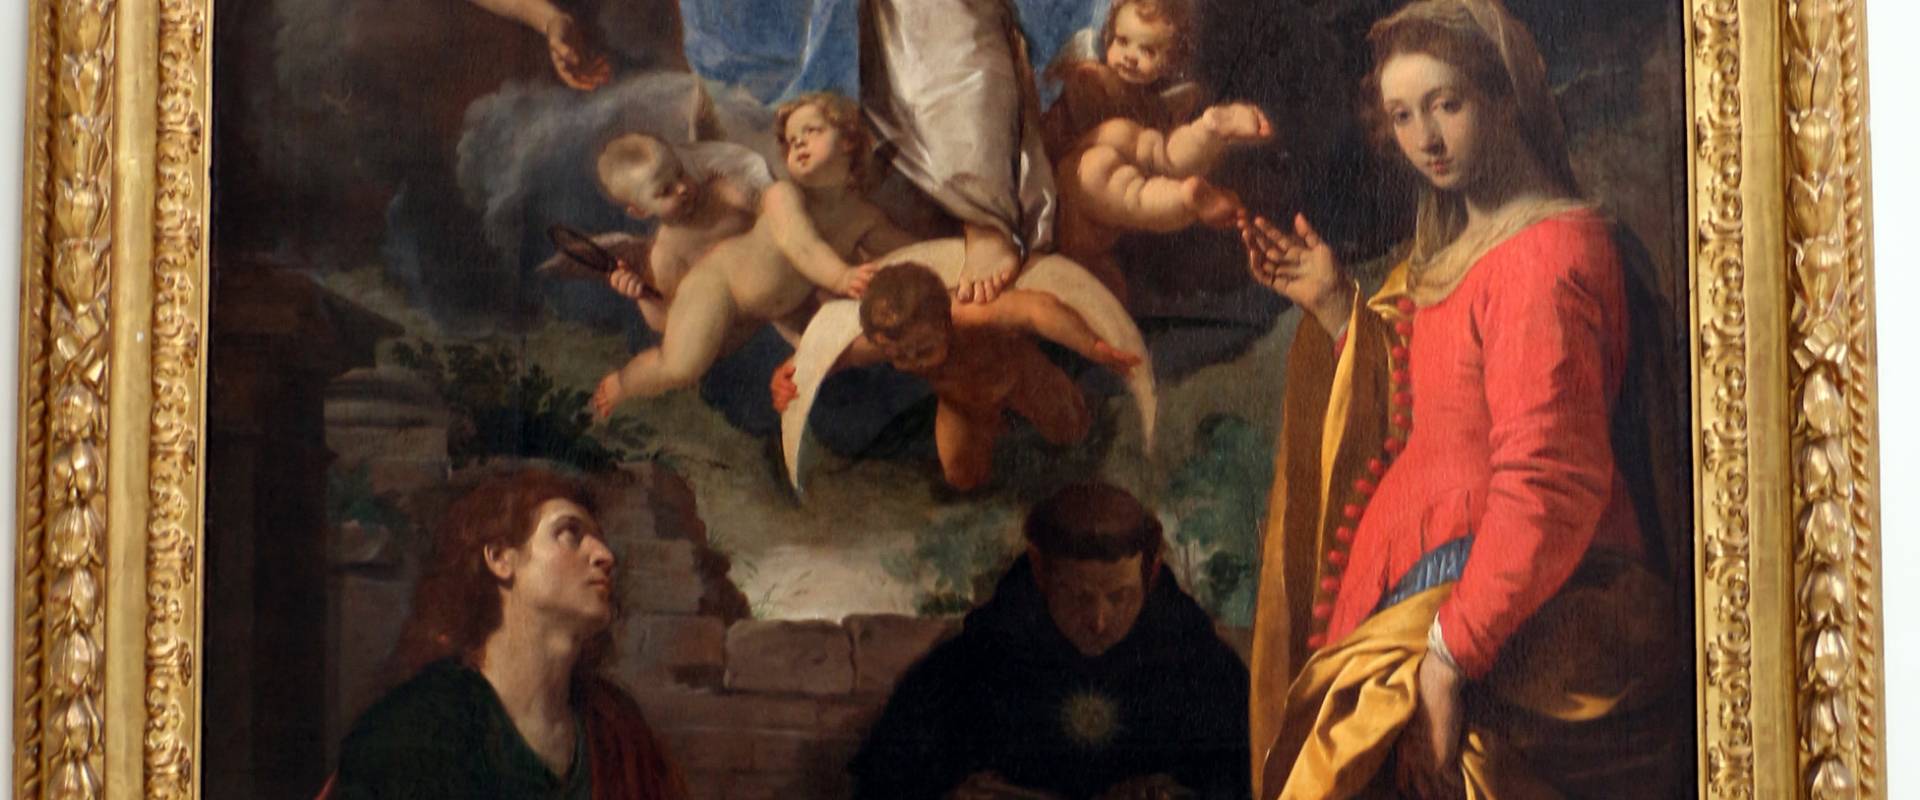 Simone cantarini, madonna in gloria tra santi, 1632-34 ca., 01 foto di Sailko